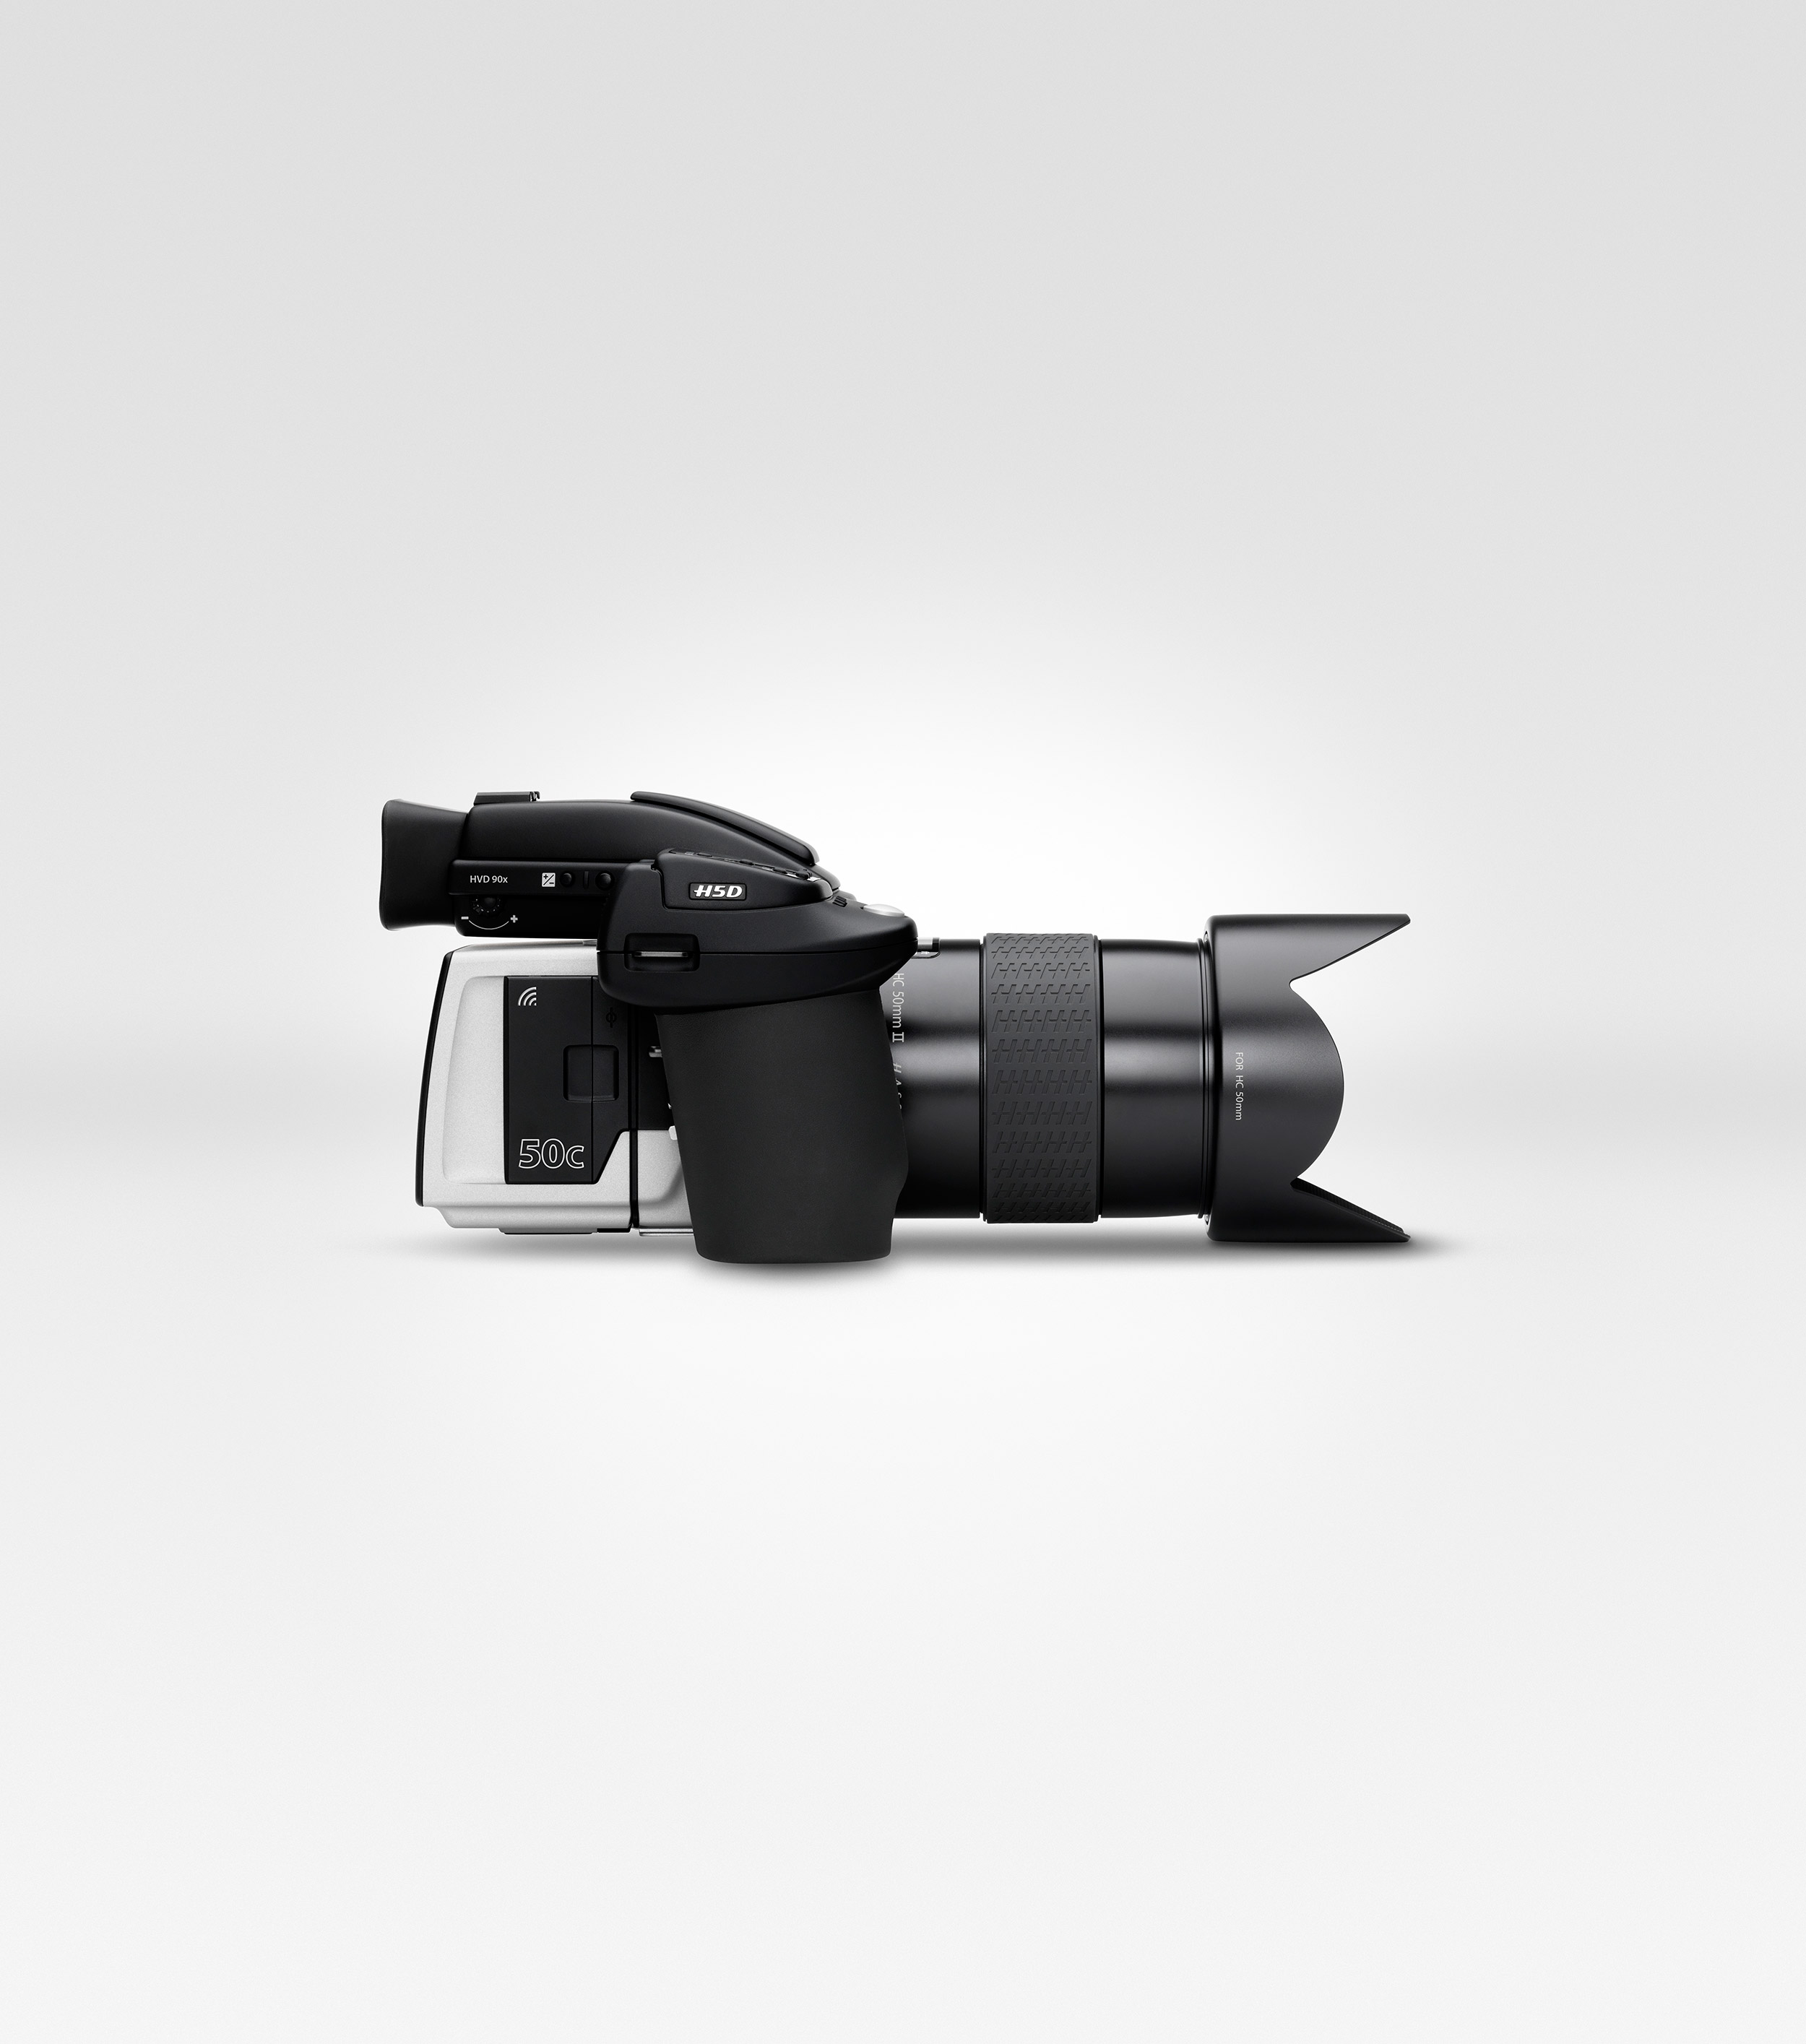  Hasselblad annuncia la fotocamera H5D-50c abilitata per Wi-Fi